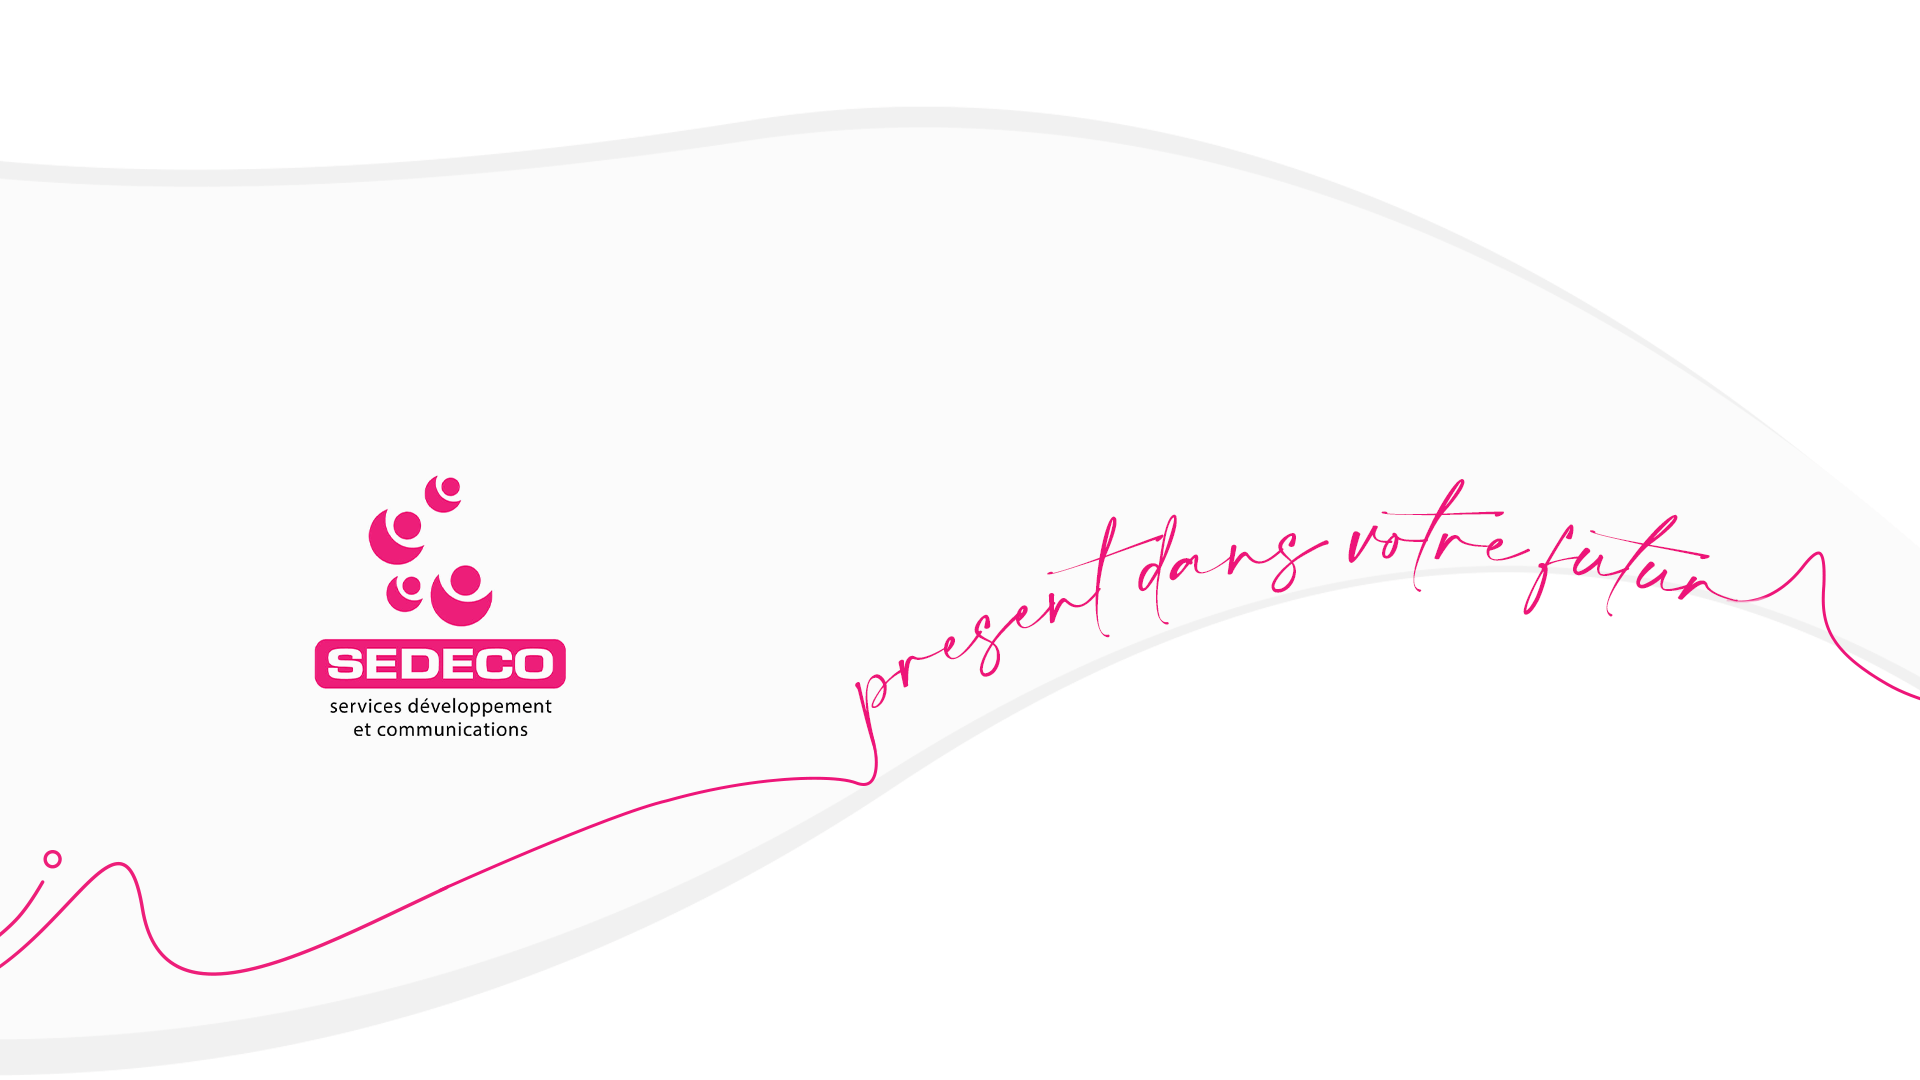 Logo de Sedeco et son slogan "Présent dans votre futur"